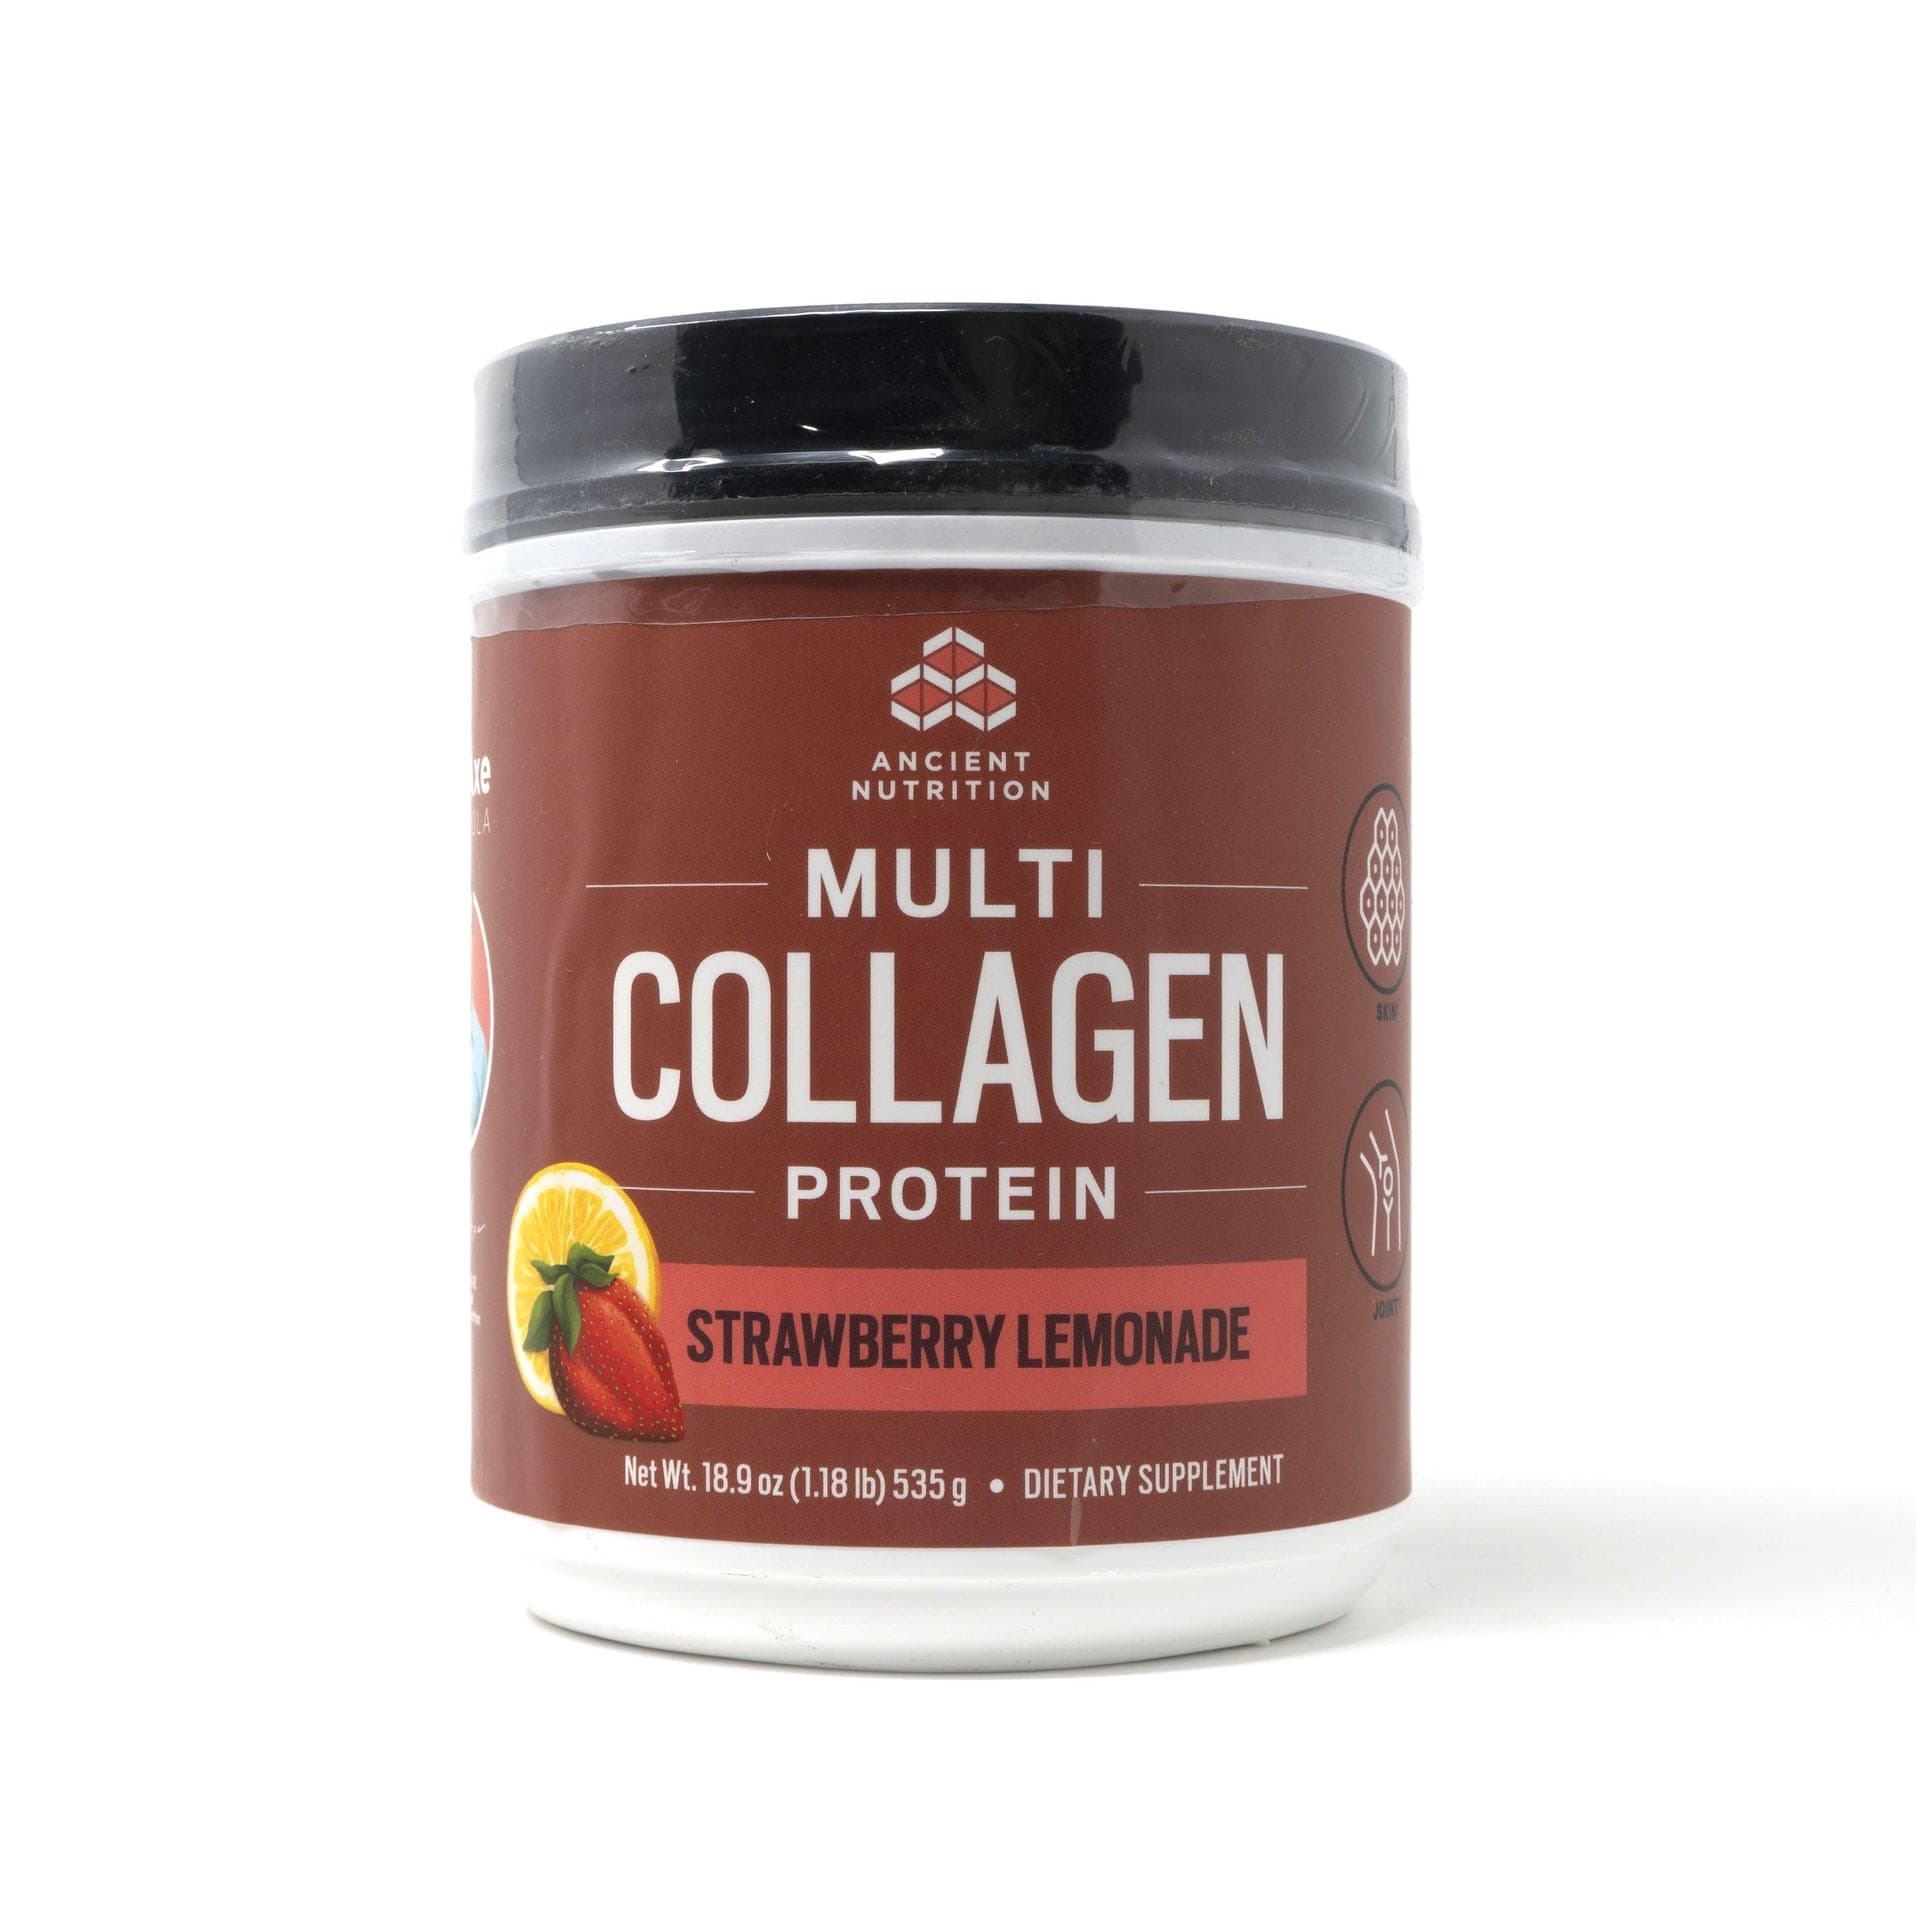 Multi Collagen Protein.